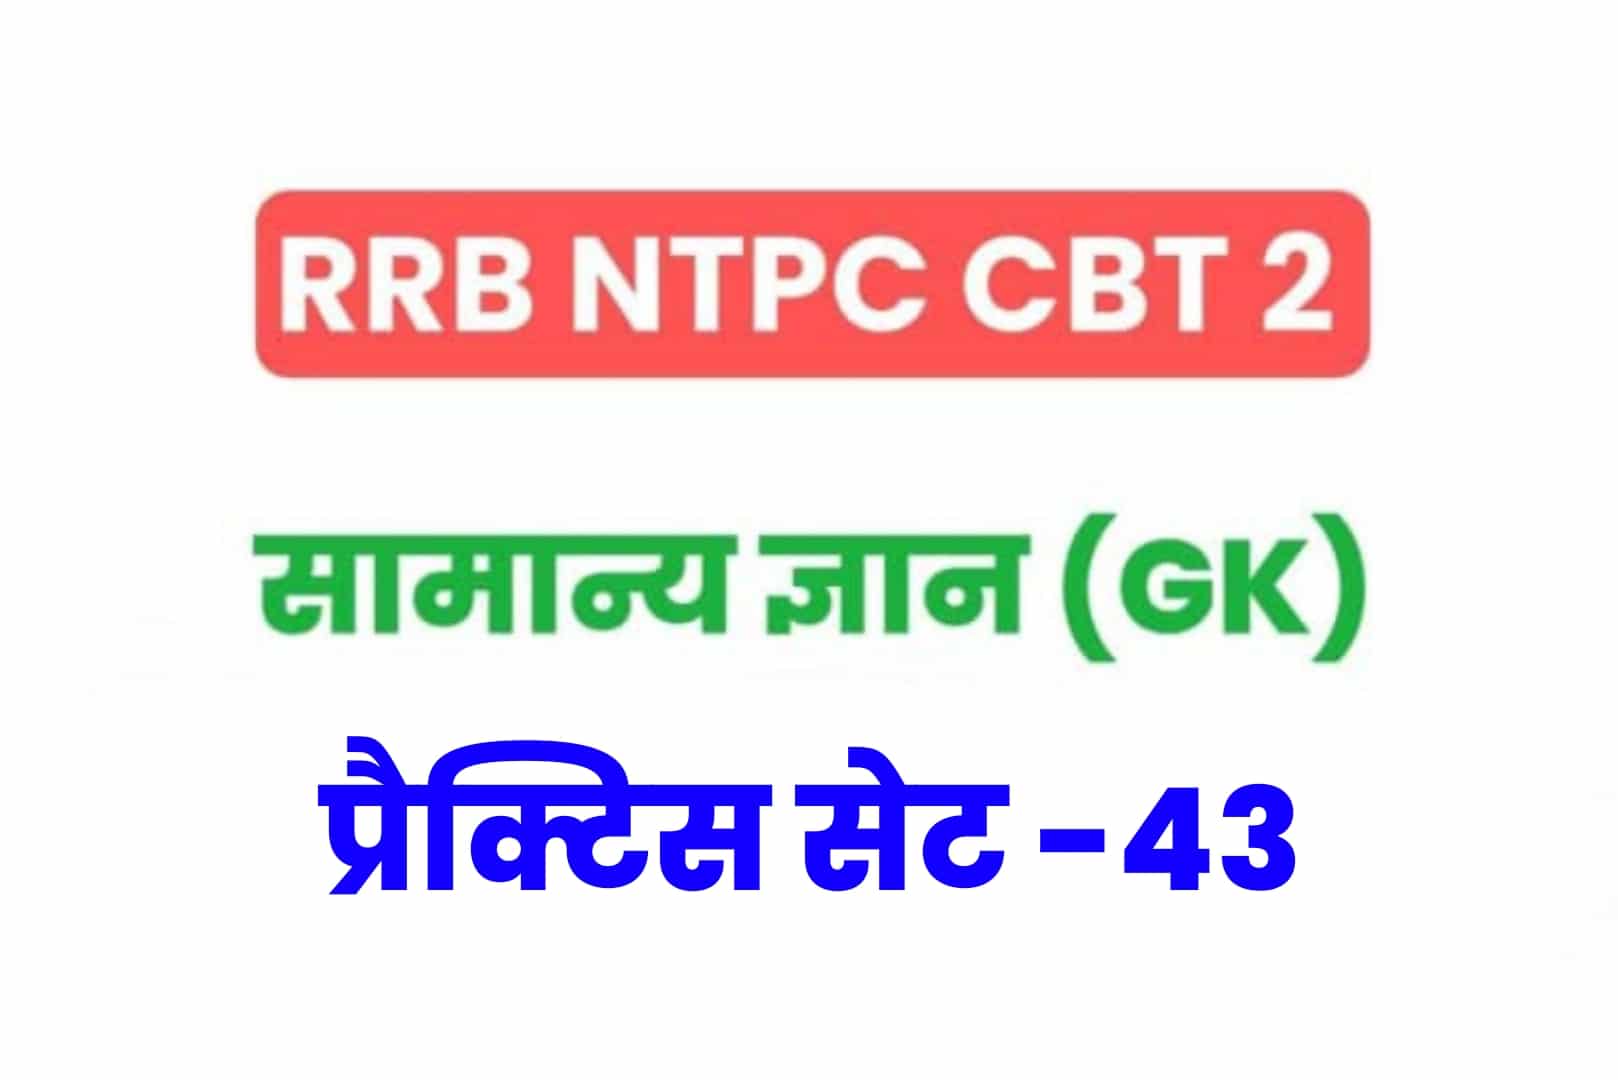 RRB NTPC CBT 2 GK प्रैक्टिस सेट 43: परीक्षा होने से पूर्व जरूर पढ़ें सामान्य ज्ञान के 25 मुख्य MCQ